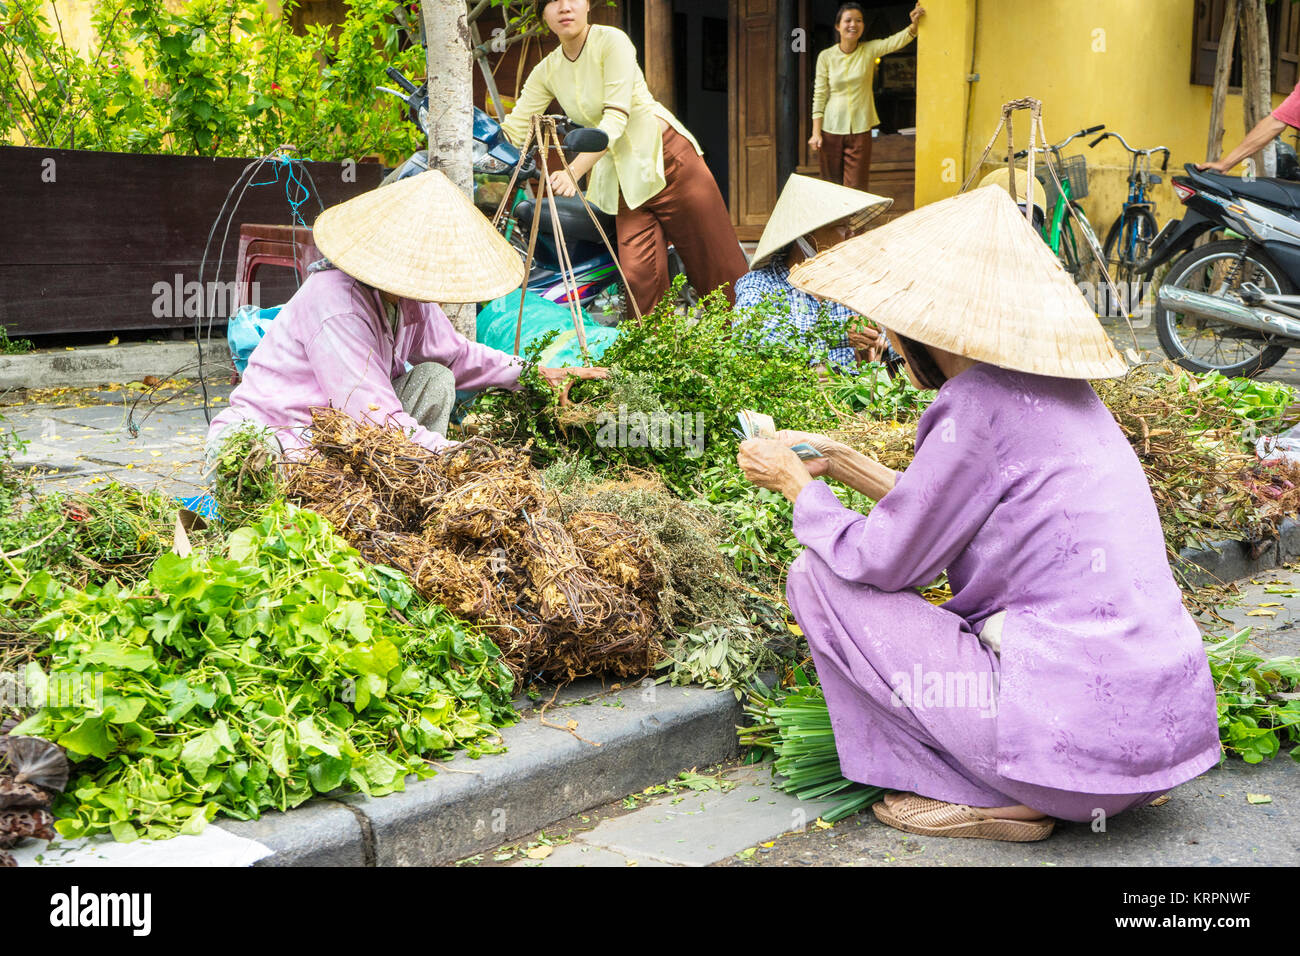 Royalty Free Stock Bild in hoher Qualität von Hoi An, Vietnam. Stockfoto